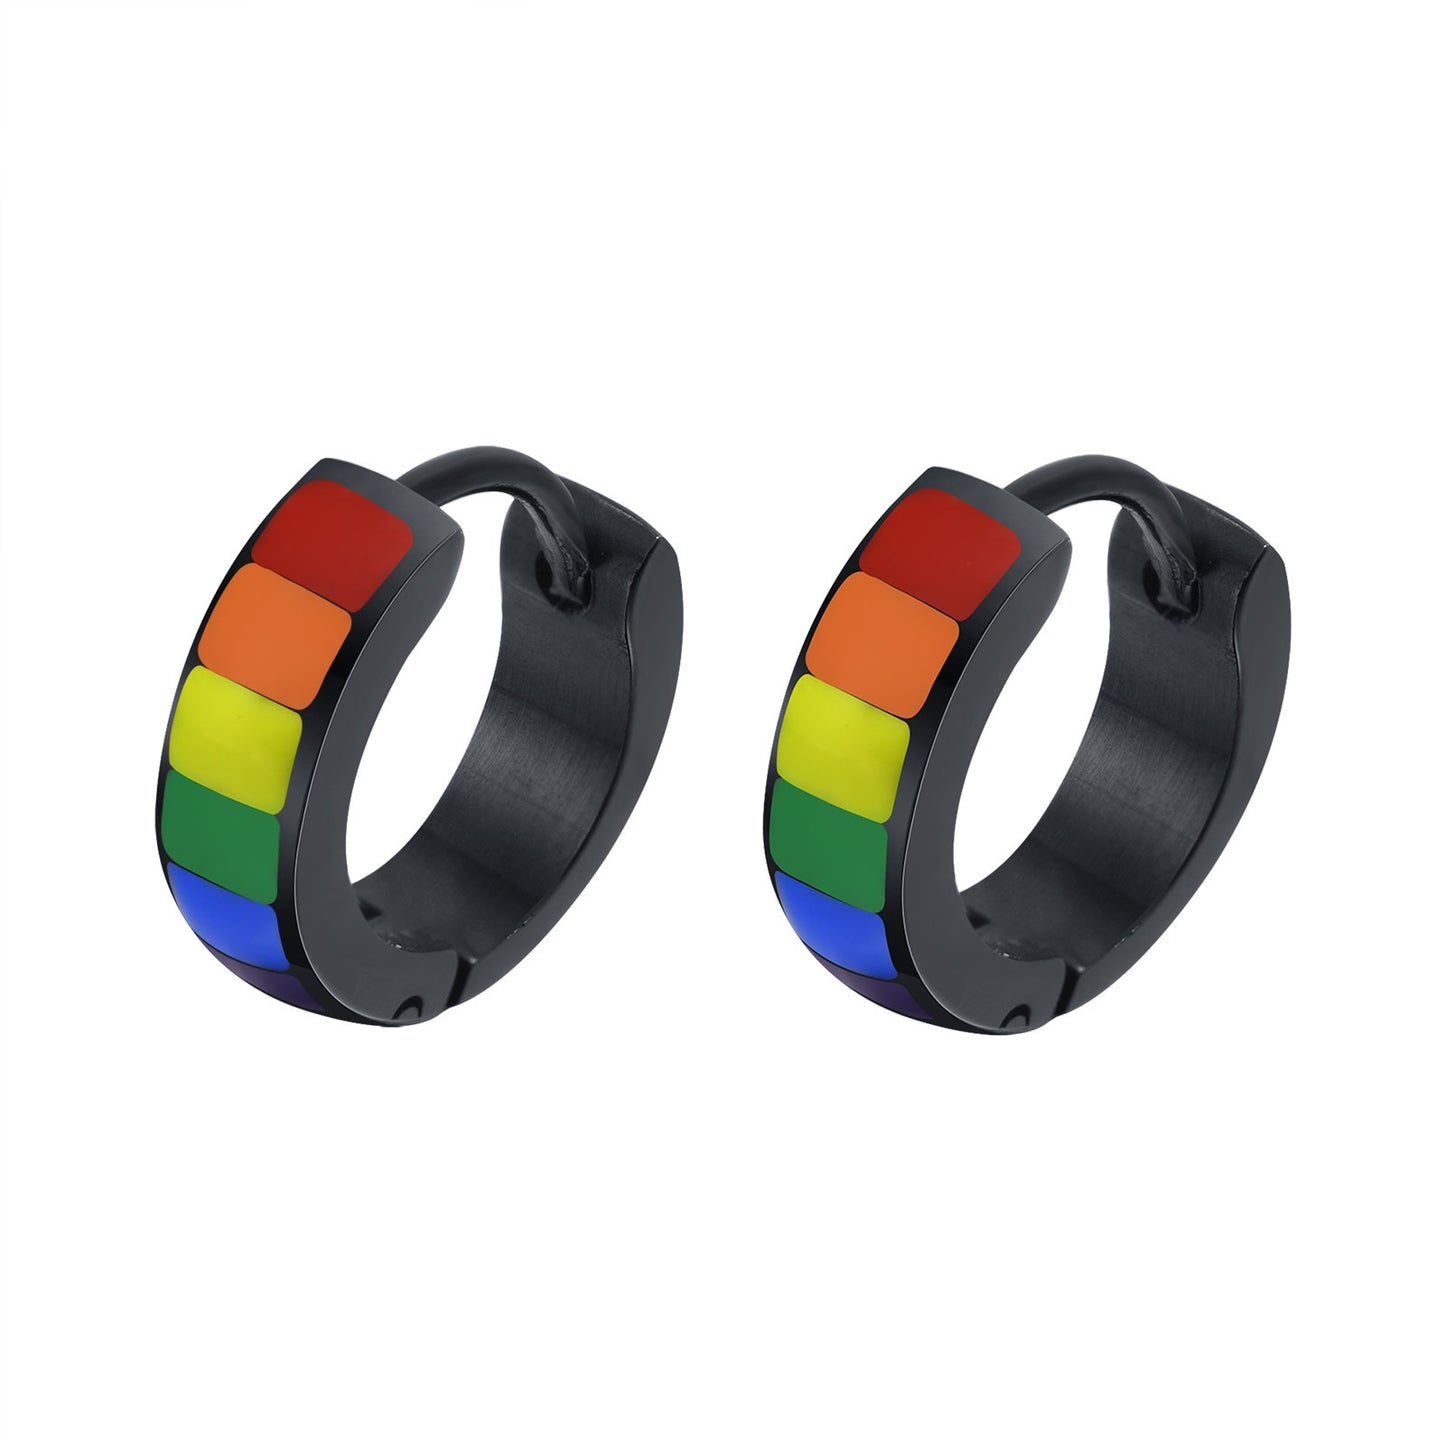 LGBTQ+ Pride Rainbow Stud Earrings Stainless Steel  9*10mm